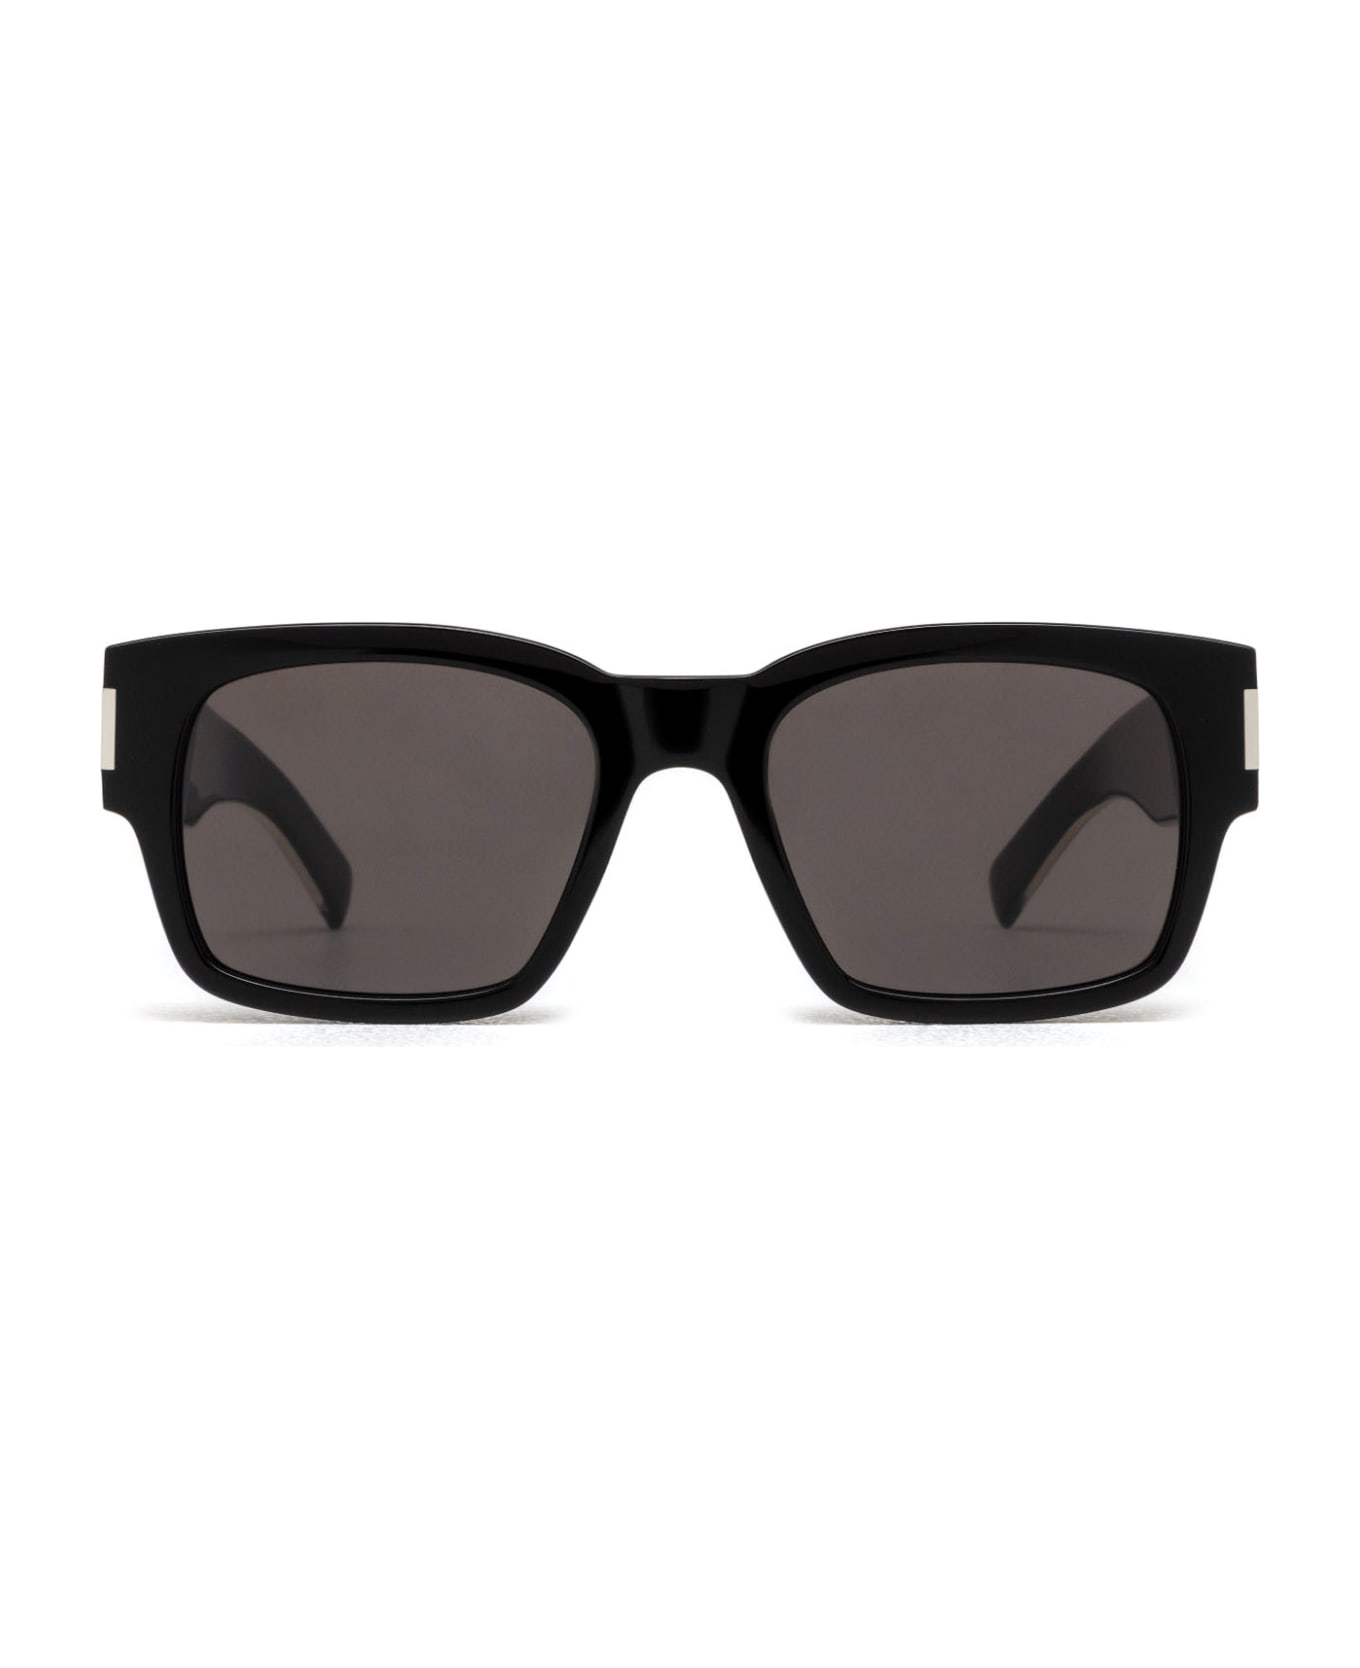 Saint Laurent Eyewear Sl 617 Black Sunglasses - Black サングラス